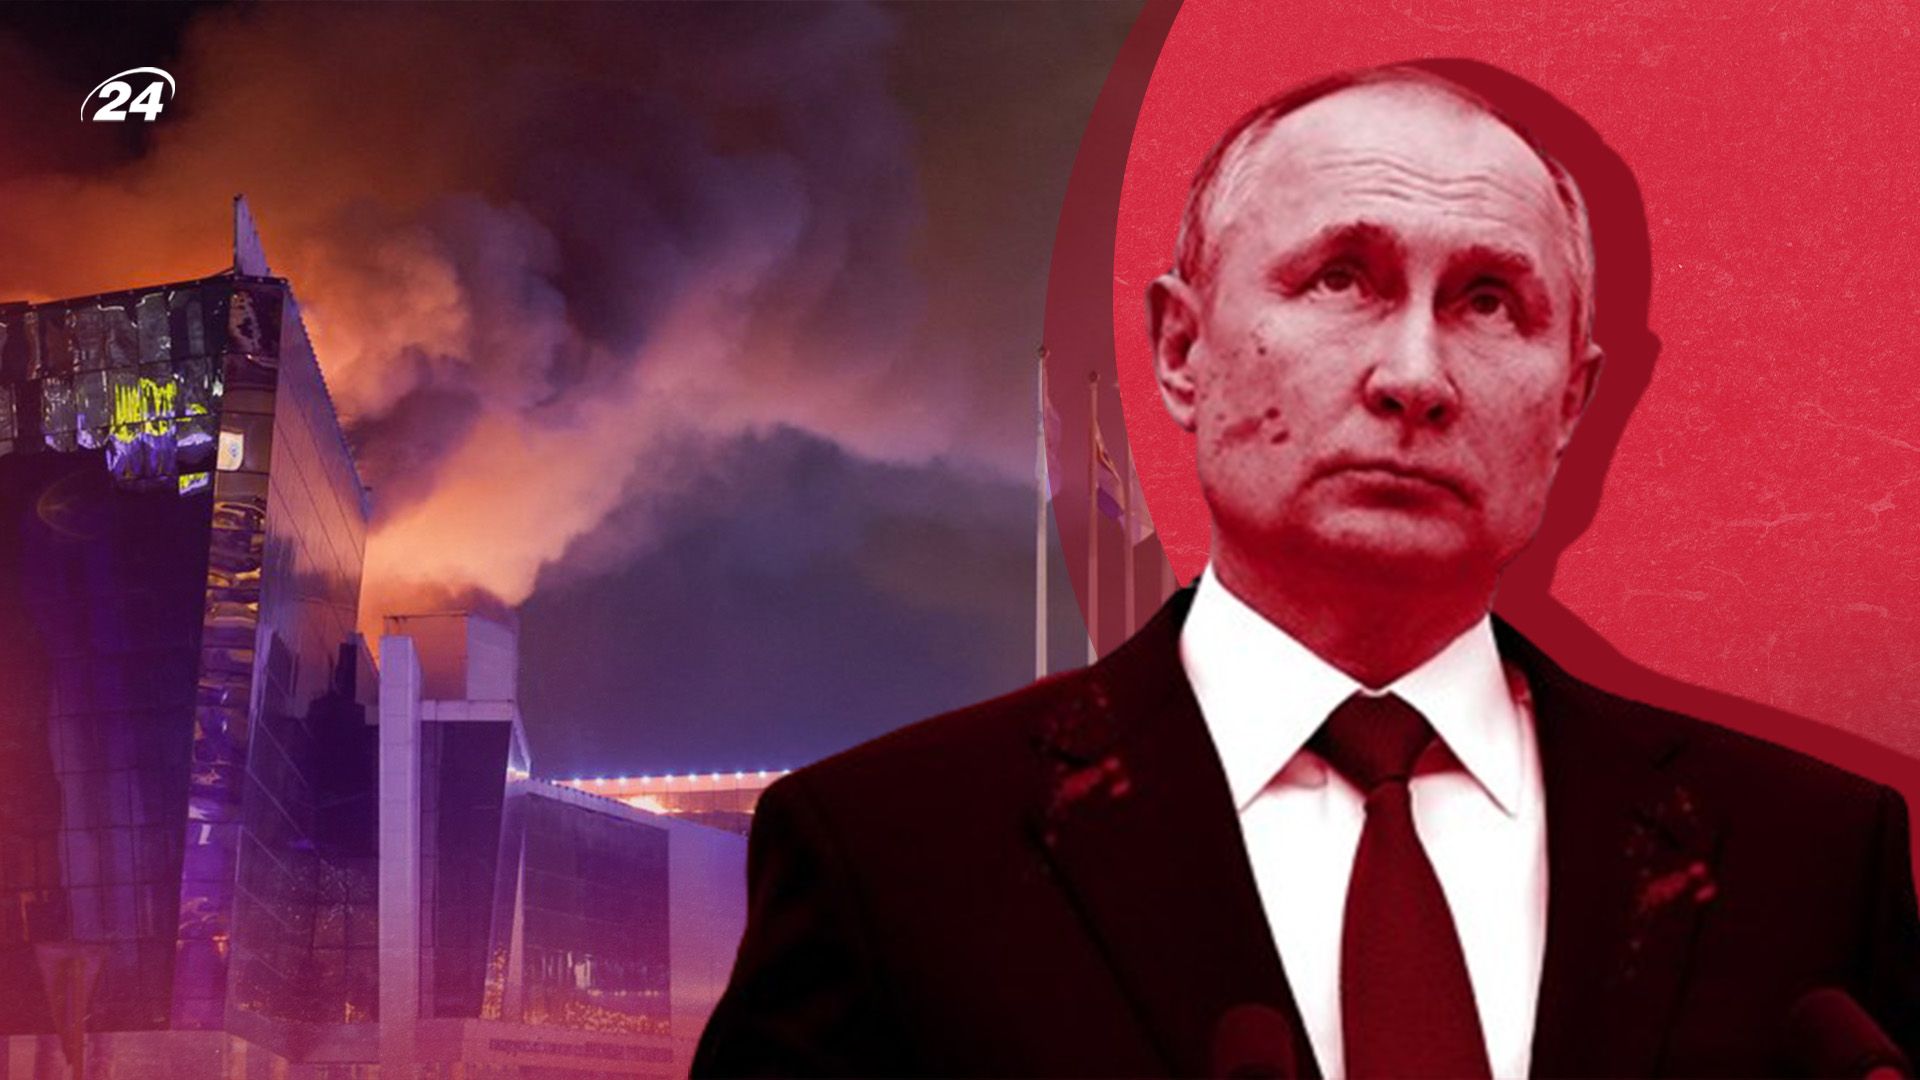 Крокус теракт - какое будущее ждет Путина и россиян - анализ экспертов - 24 Канал